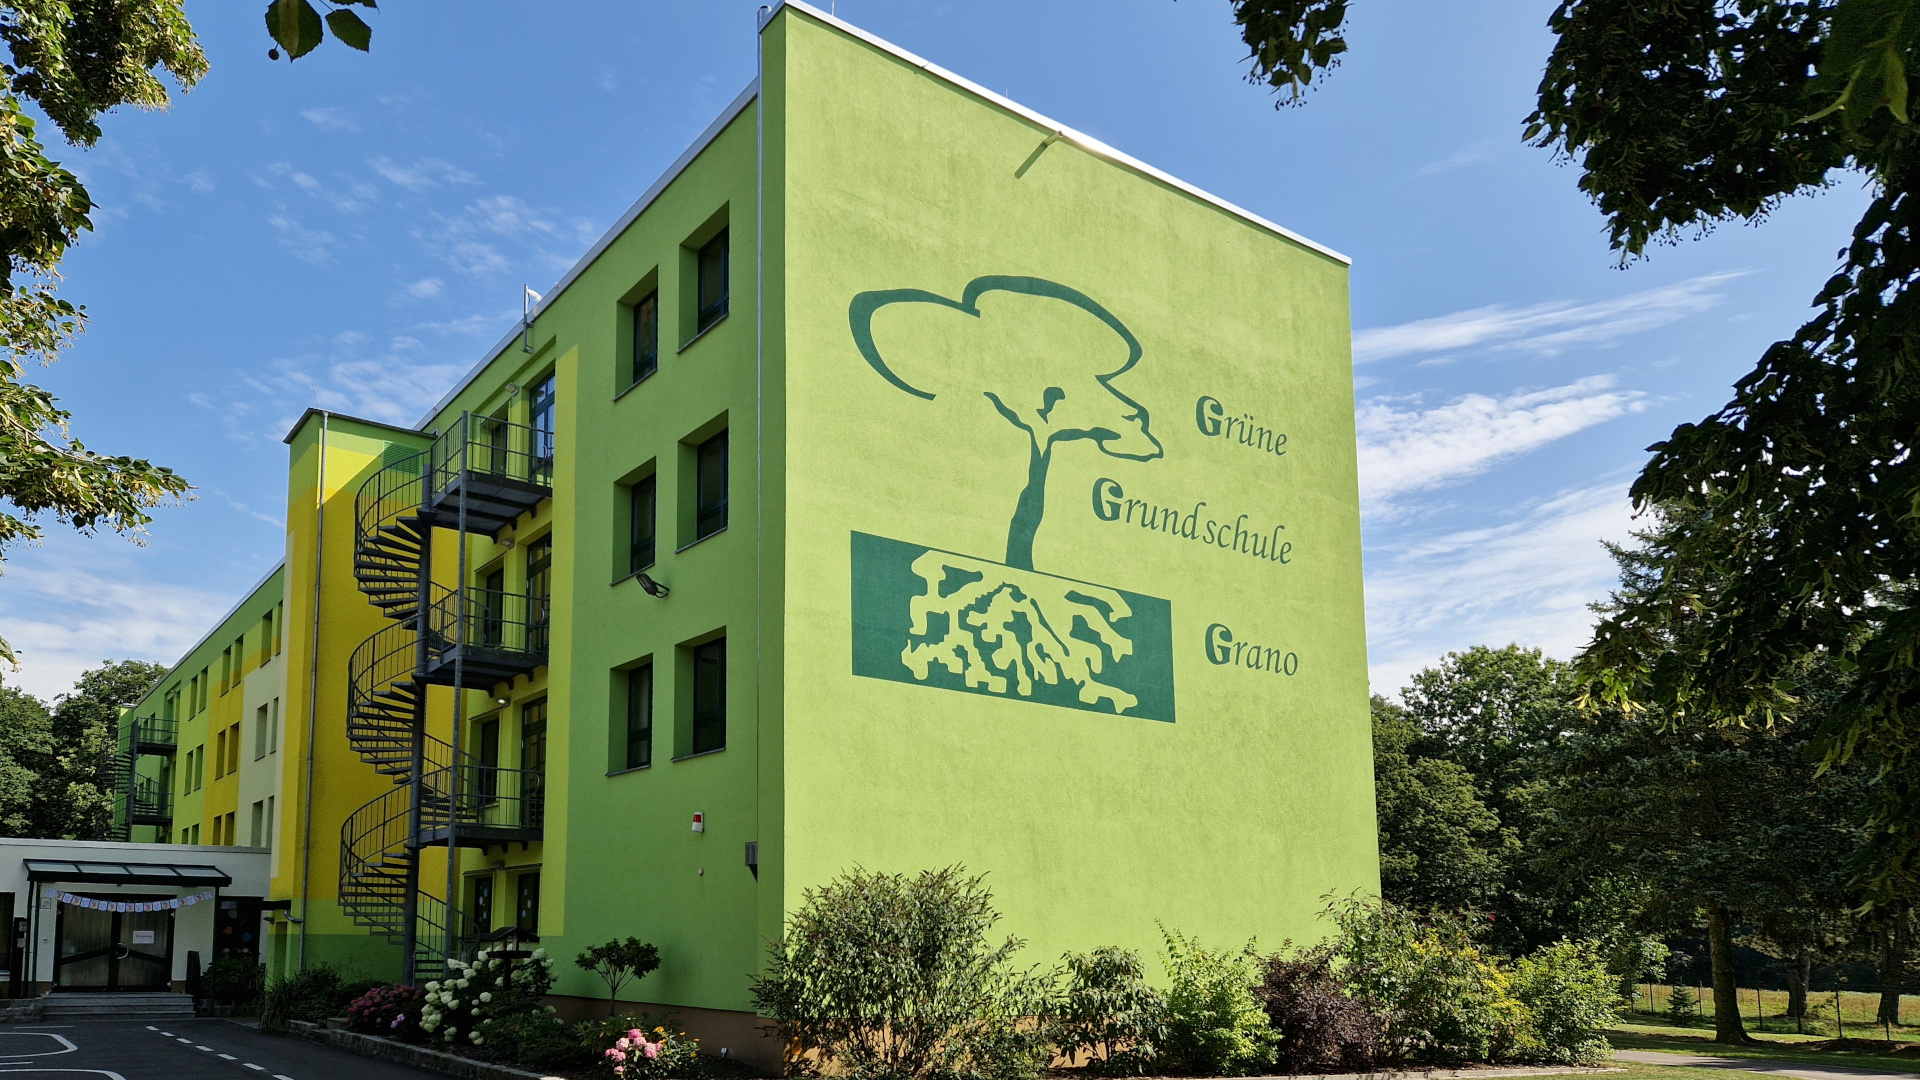 Grüne Grundschule Grano